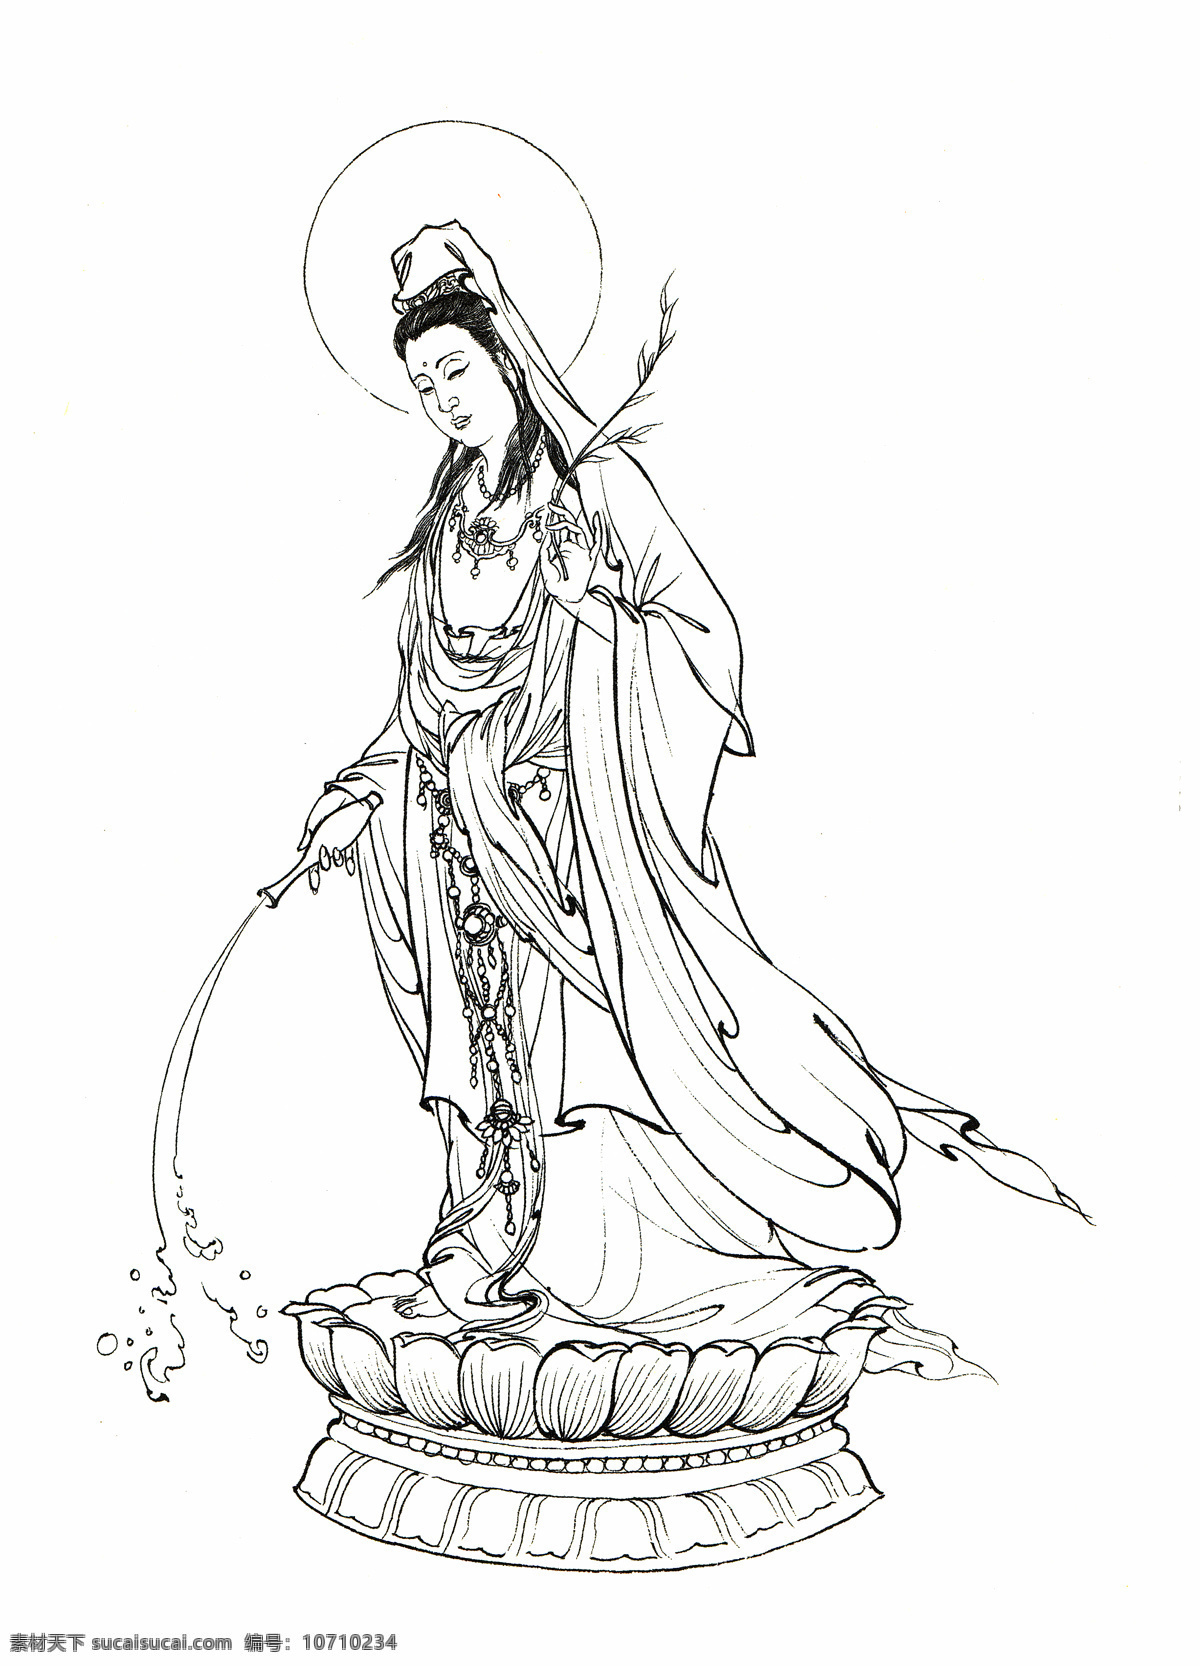 西游记 观音 菩萨 线搞 白描人物 中国古代 神话人物 观音菩萨 白描 李 云中 文化艺术 绘画书法